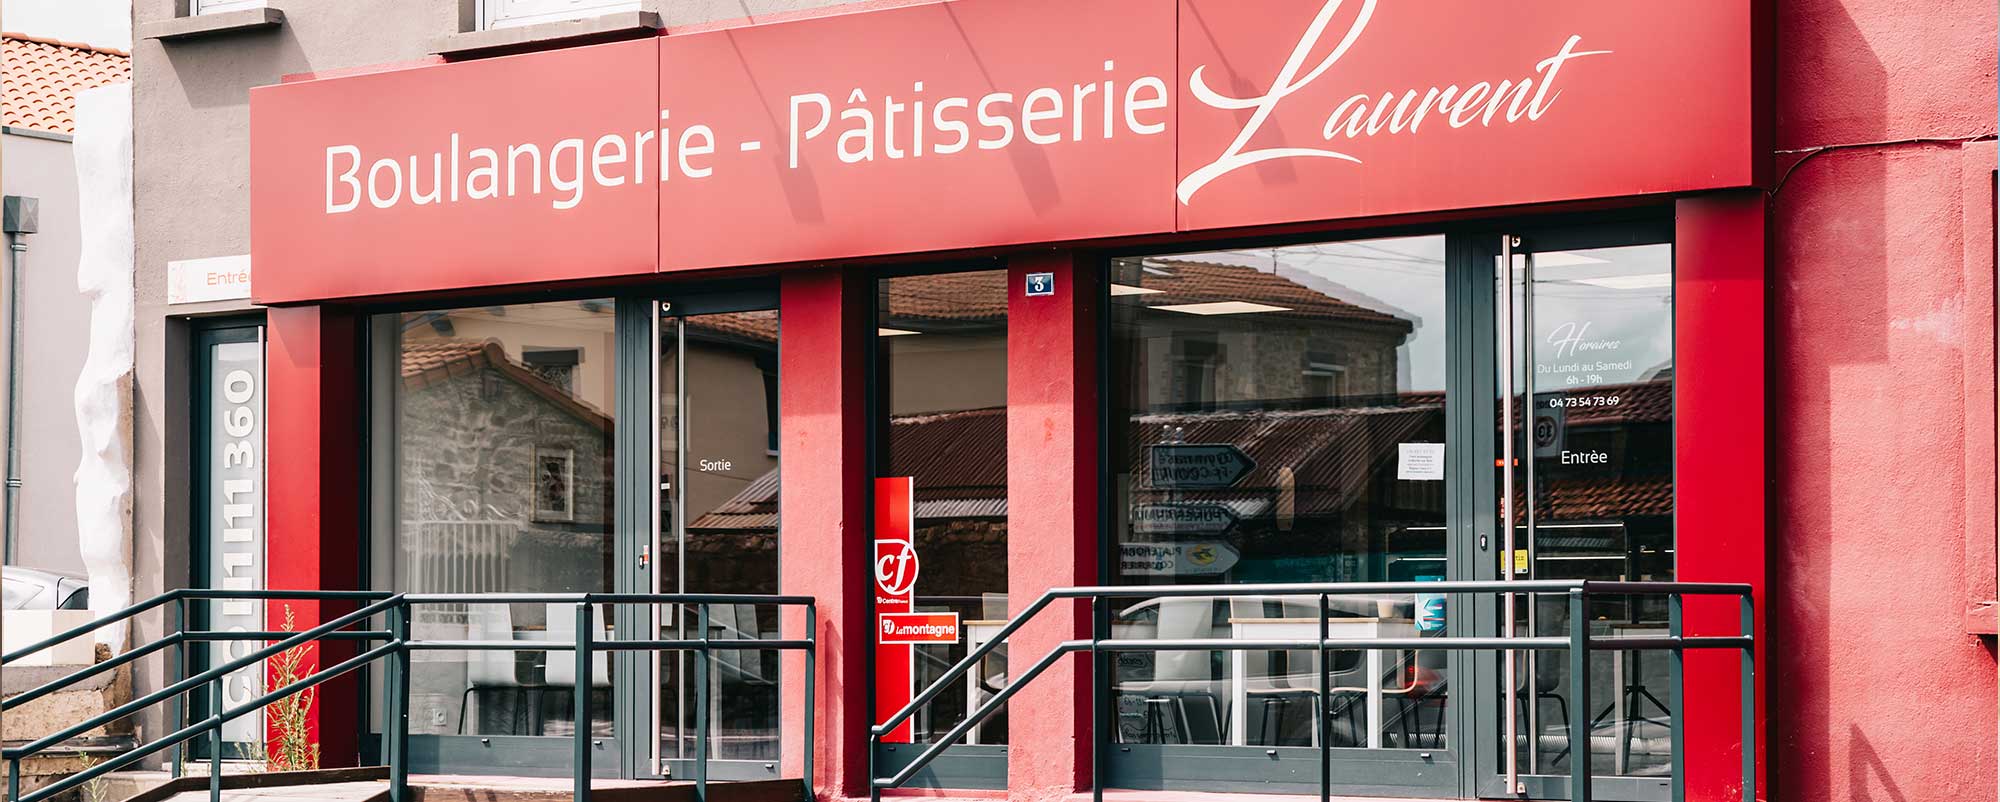 Boulangerie Pâtisserie Laurent